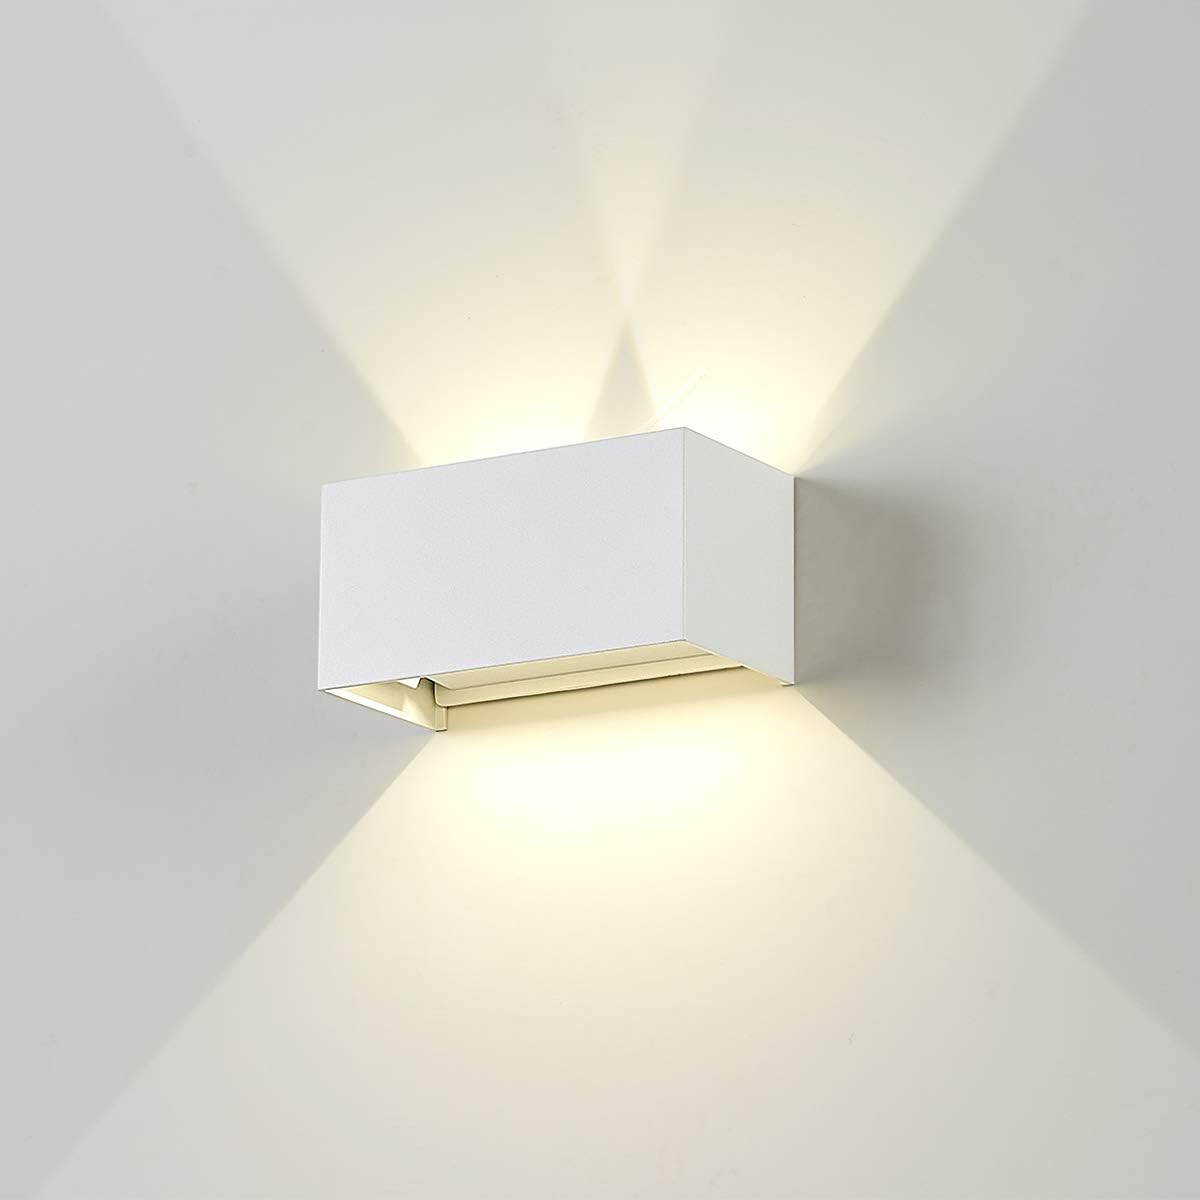 Dr.lazy 20W Dekorative Wandlampen,wasserdicht IP65 LED-Wandbeleuchtung im Innen-und Außenbereich, Einstellbarer Lichtstrahl, Außenwandleuchten 4000K Naturweiß (Weiß/Naturweiß)